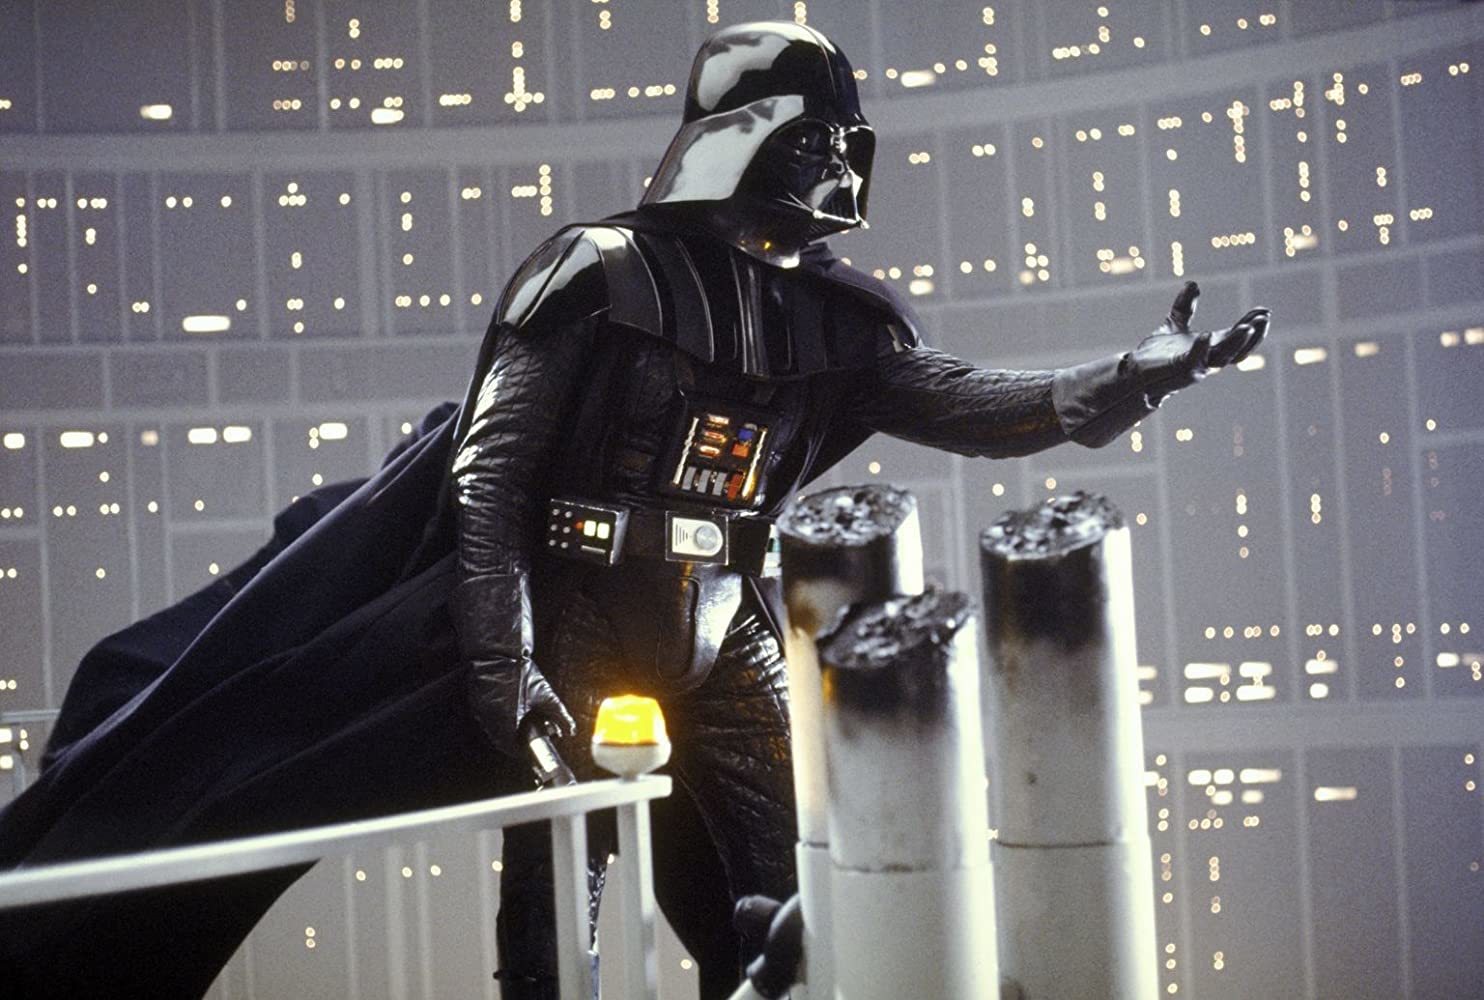 Impérium vrací úder slaví 40. výročí. Původně měly být druhé Star Wars úplně jiné | Fandíme filmu